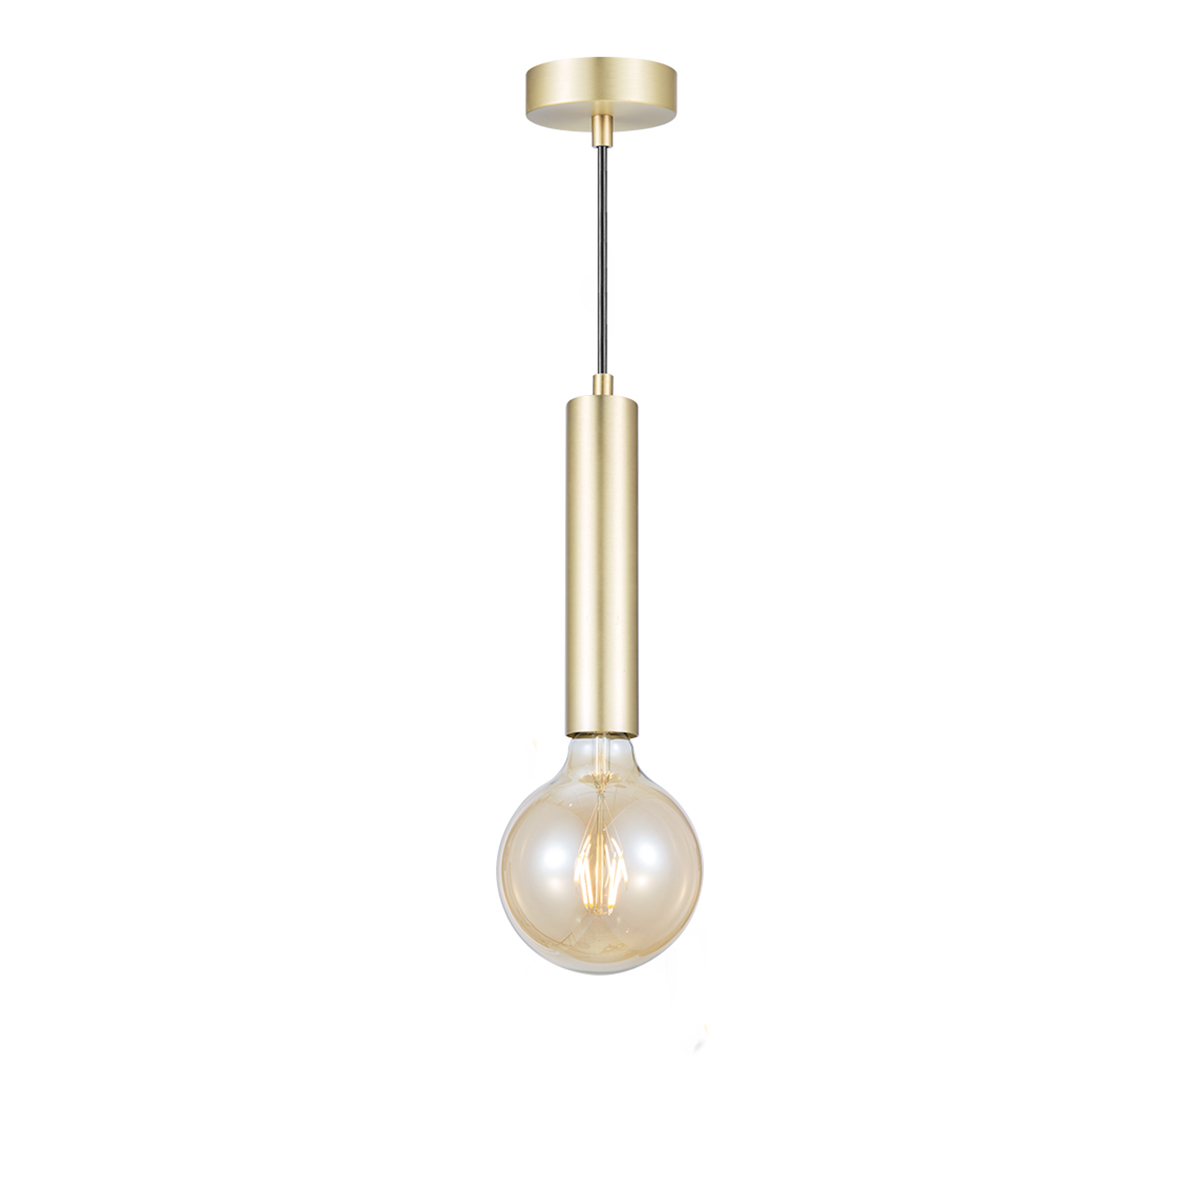 Tangla lighting - TLP4002-01BS - LED pendant lamp 1 Light - metal in brass - pillar - E27